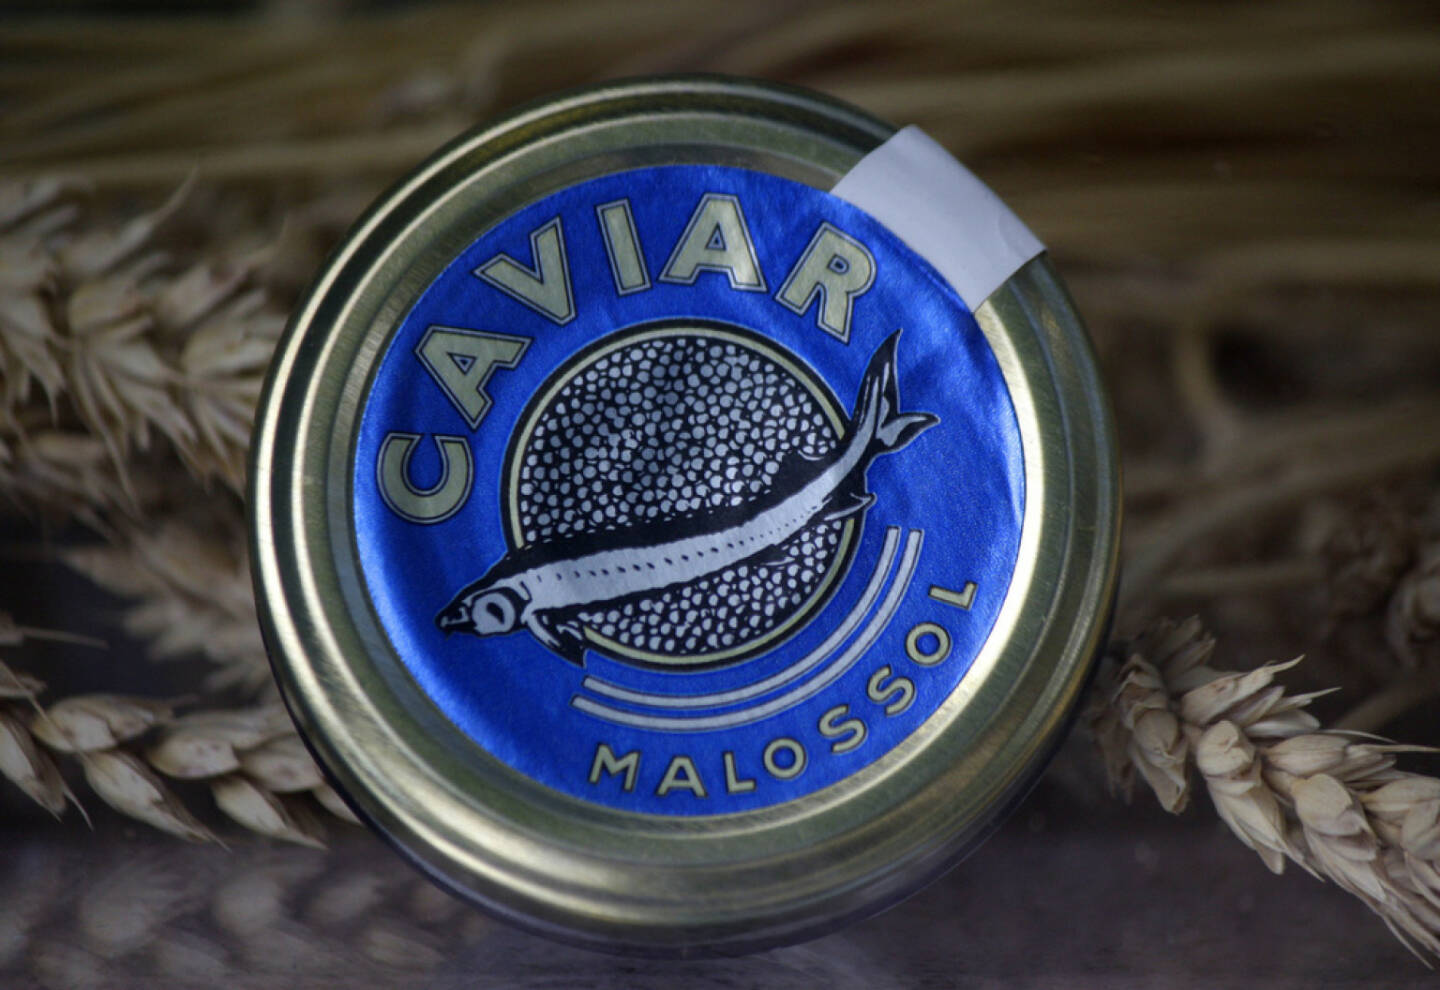 Caviar, Russland, Fisch, <a href=http://www.shutterstock.com/gallery-320989p1.html?cr=00&pl=edit-00>360b</a> / <a href=http://www.shutterstock.com/editorial?cr=00&pl=edit-00>Shutterstock.com</a>, 360b / Shutterstock.com